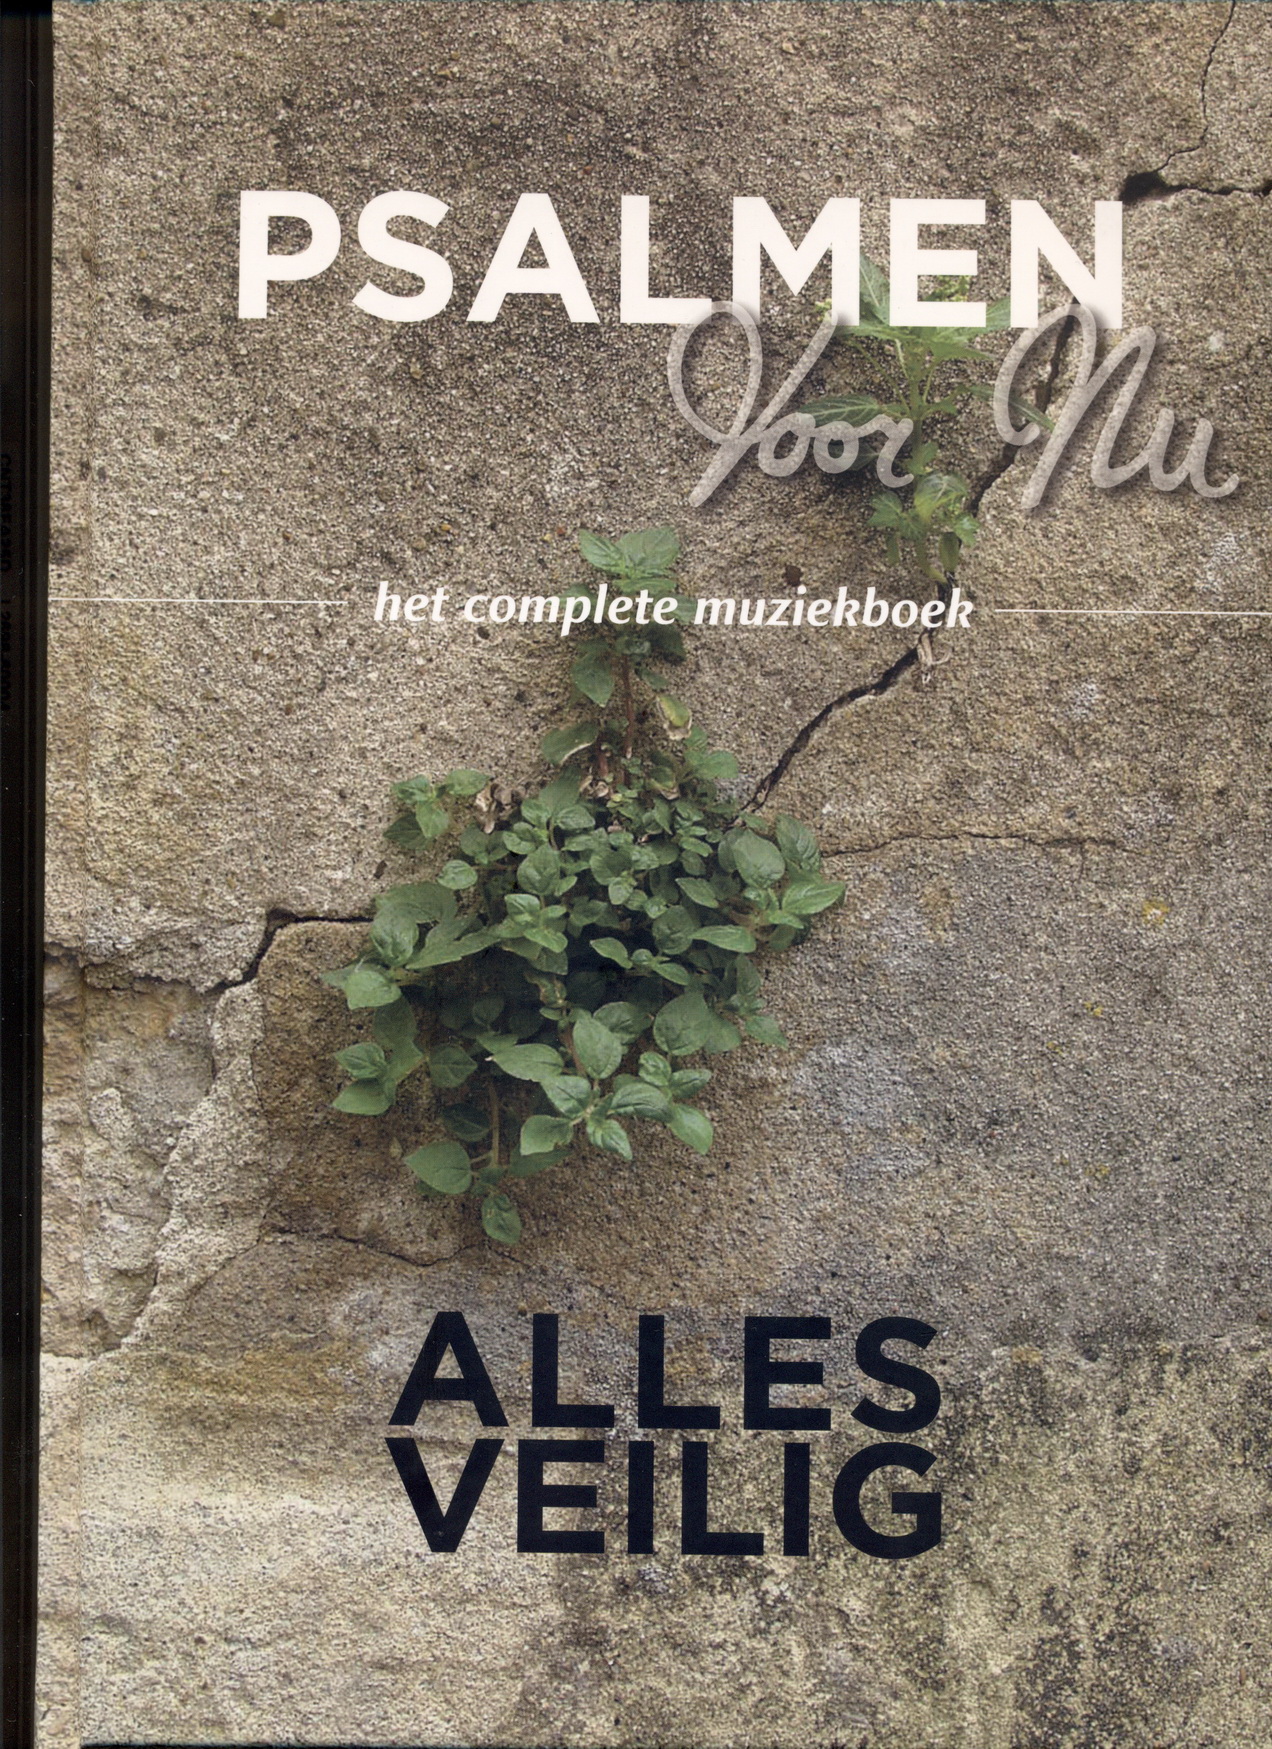 Psalmen Voor Nu: Alles Veilig (Complete Muziekboek)